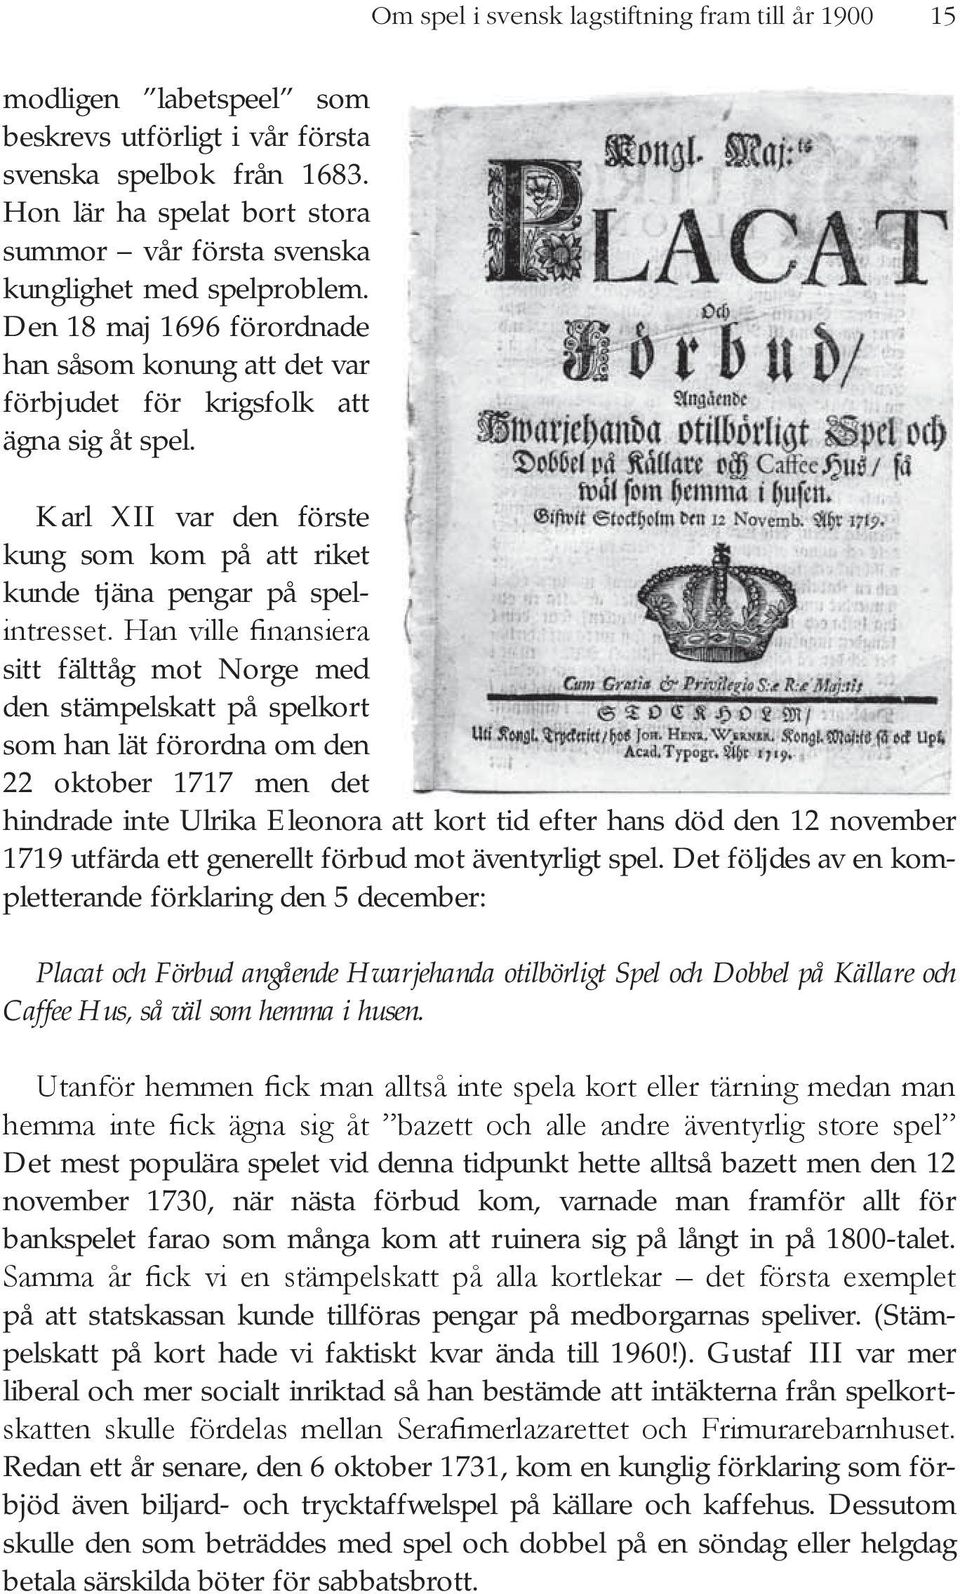 Karl XII var den förste kung som kom på att riket kunde tjäna pengar på spel- sitt fälttåg mot Norge med den stämpelskatt på spelkort som han lät förordna om den 22 oktober 1717 men det hindrade inte